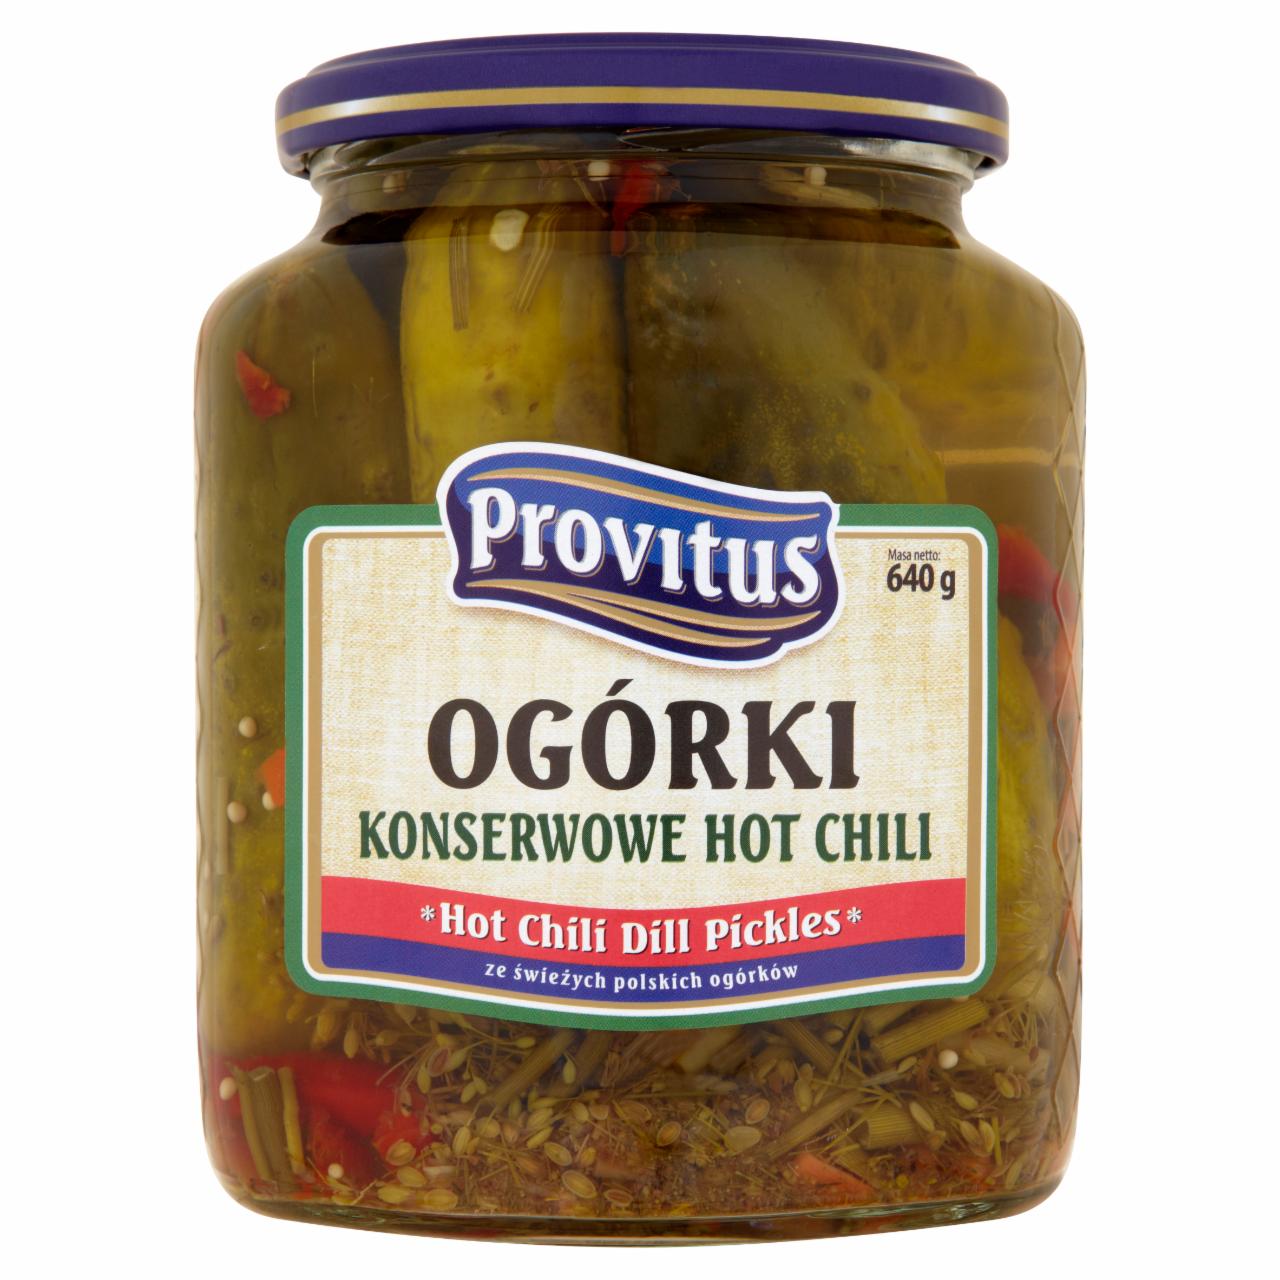 Zdjęcia - Provitus Ogórki konserwowe hot chili 640 g